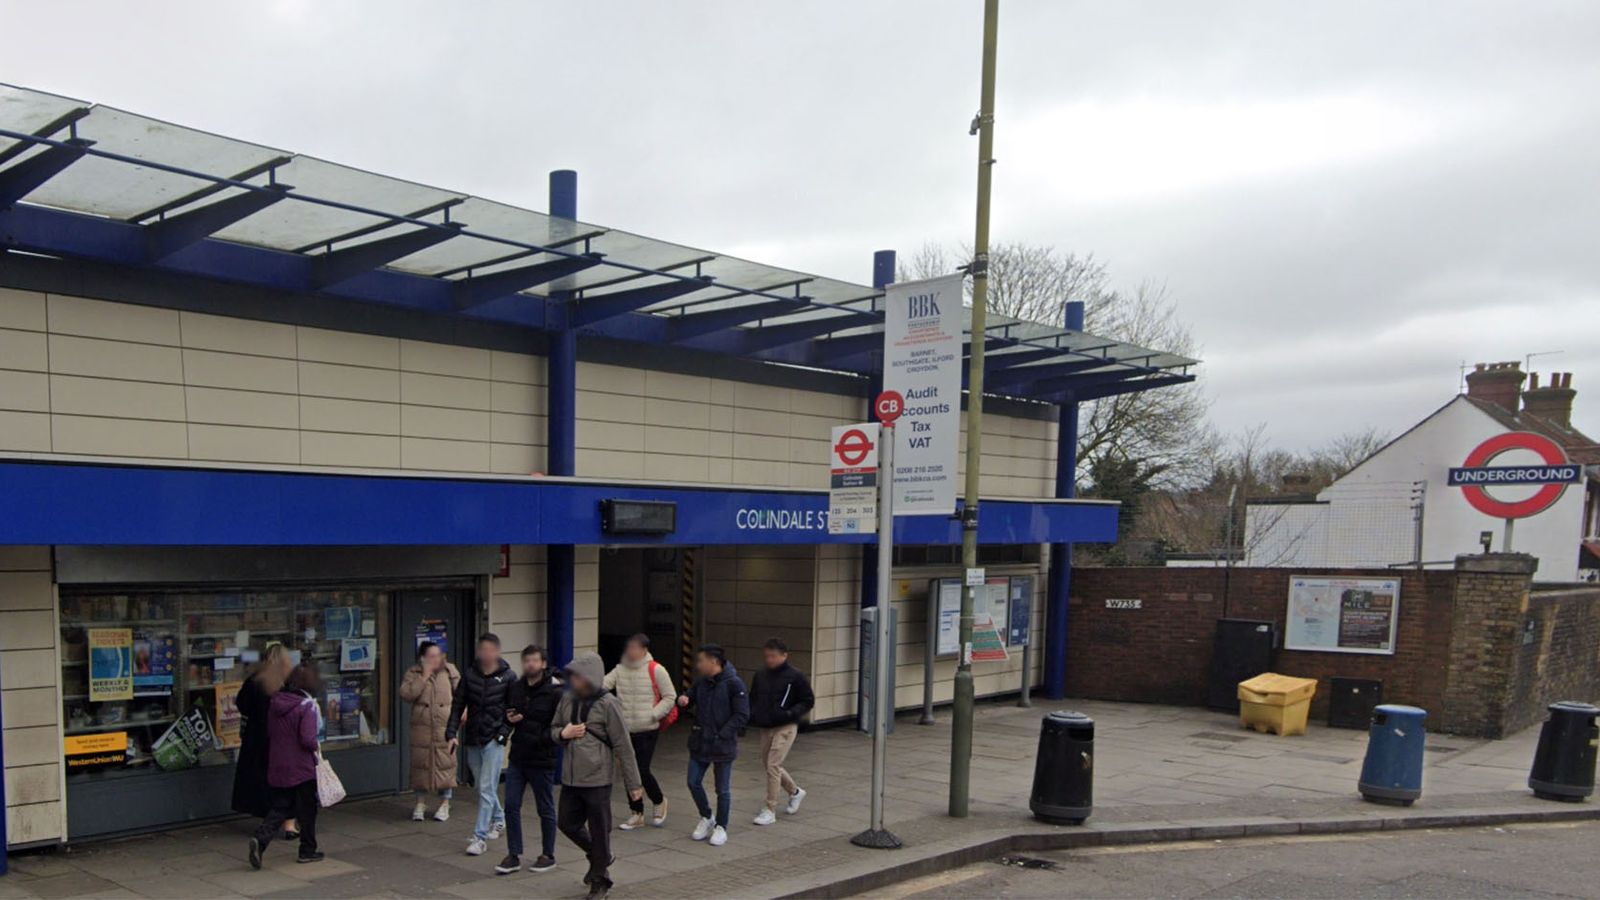 Мъж загина на релсите на метрото на гара Colindale в Лондон по време на полицейско преследване